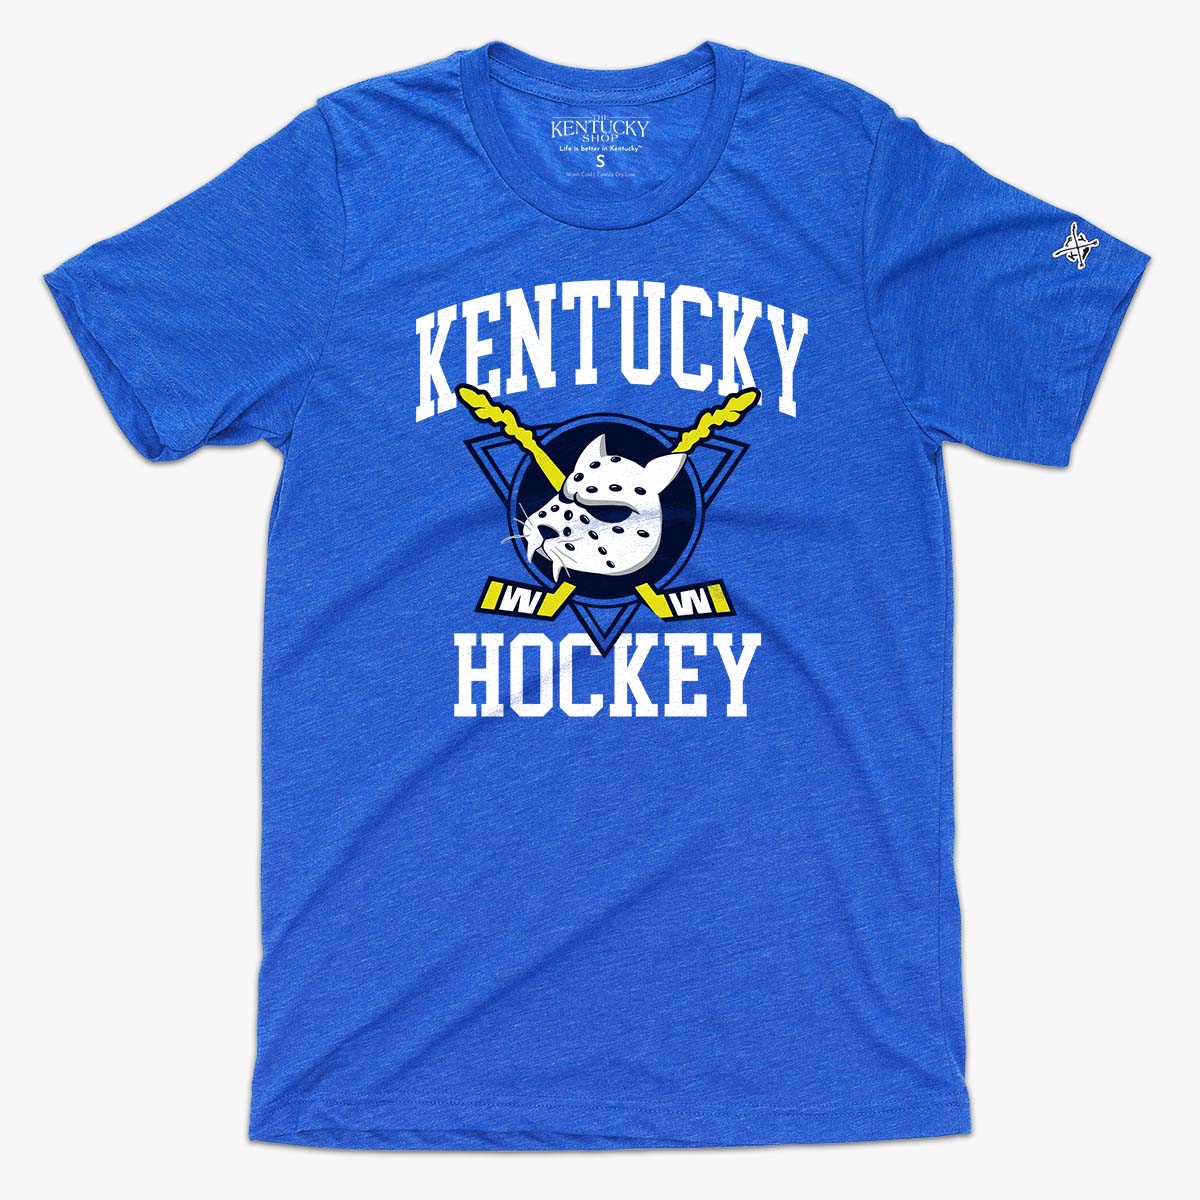 The Mighty Kentucky Hockey Tee